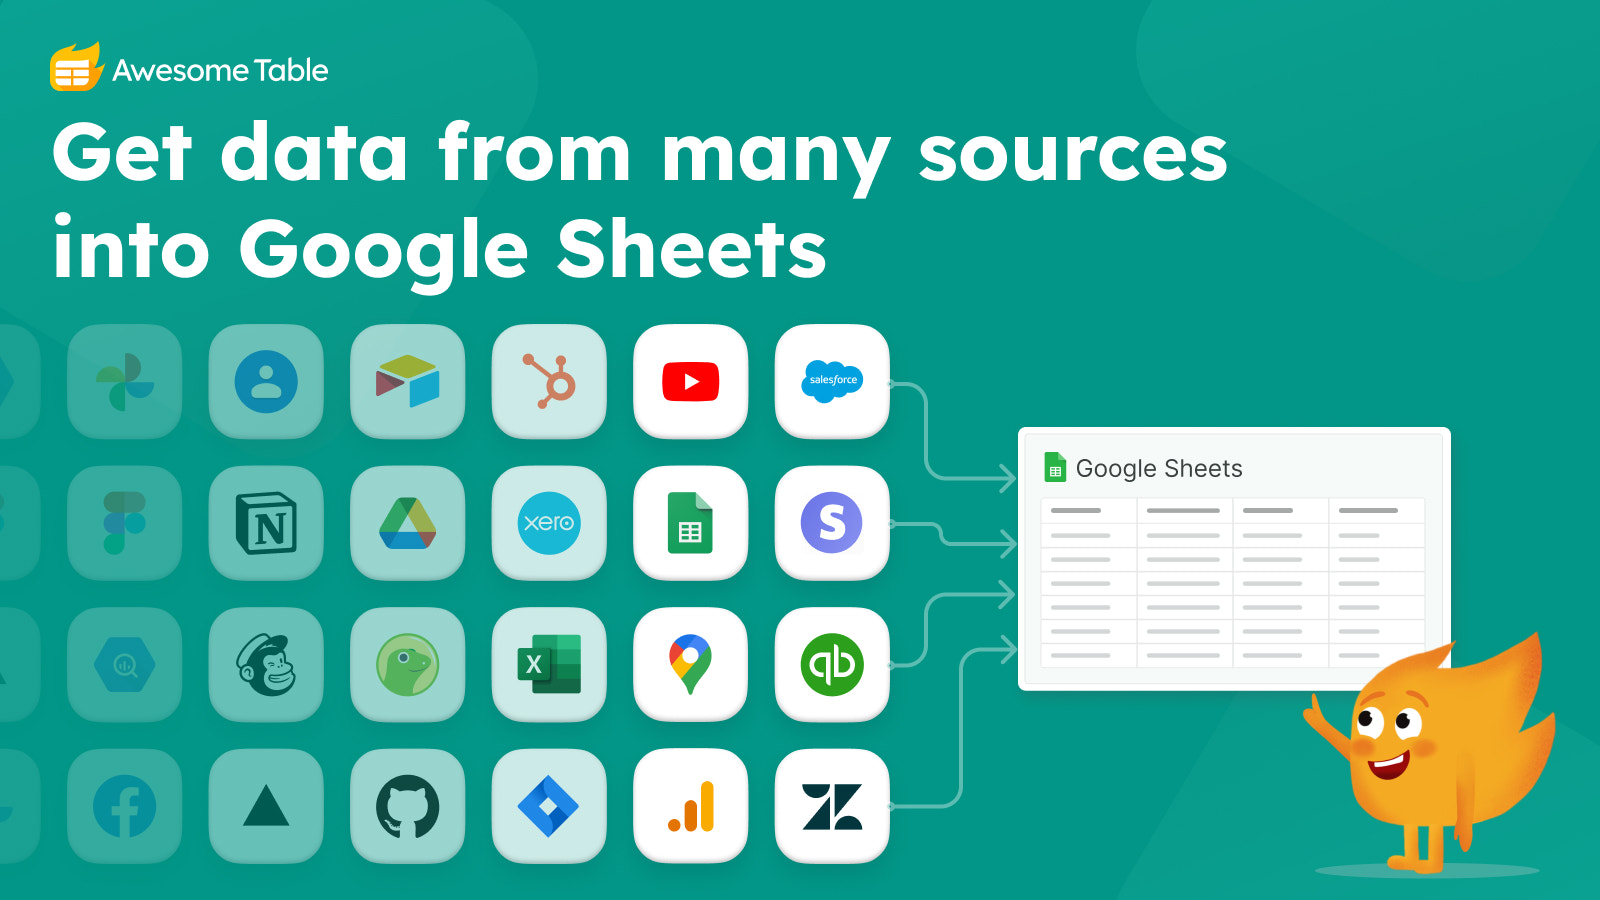 Importer des données dans Google Sheets